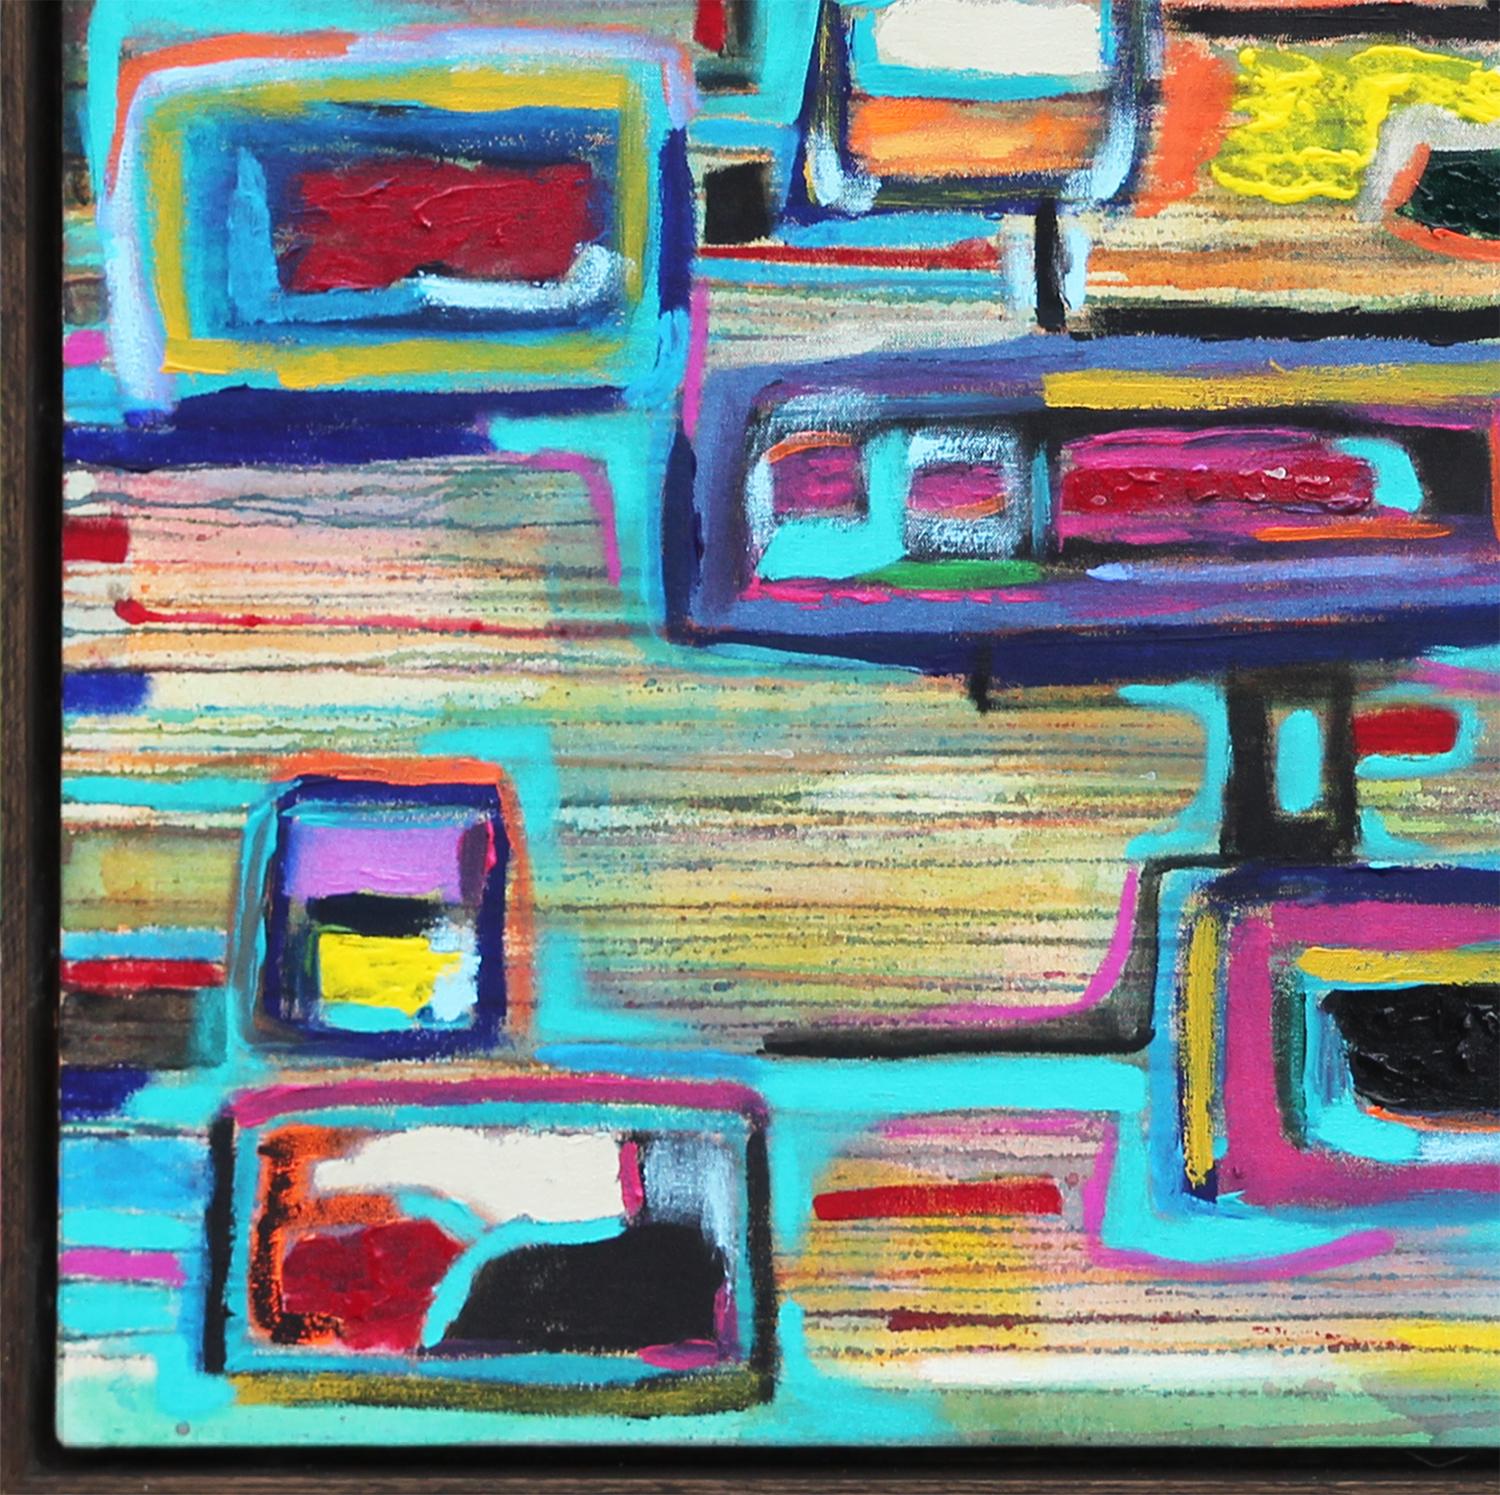 Blaugrünes, grünes und rosafarbenes abstraktes Gemälde im kubistischen Stil des texanischen Künstlers Paul Reeves. Das Werk weist die geometrische Struktur des traditionellen Kubismus auf, kombiniert mit der Pinselführung des abstrakten